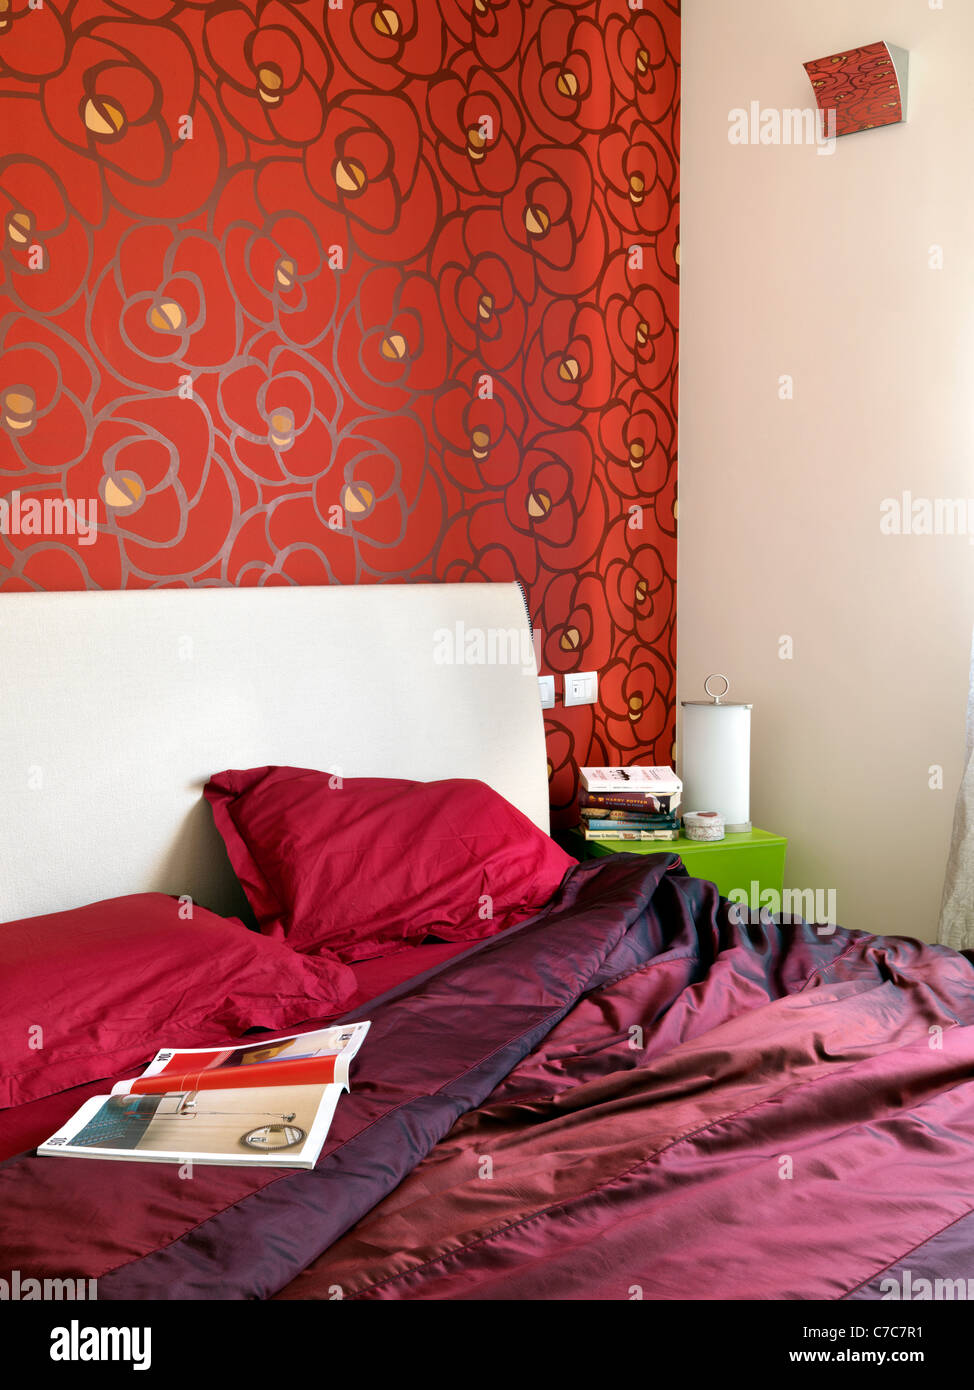 Dettaglio di una camera da letto con lenzuola rosse e tappezzeria di colore rosso su pareti Foto Stock